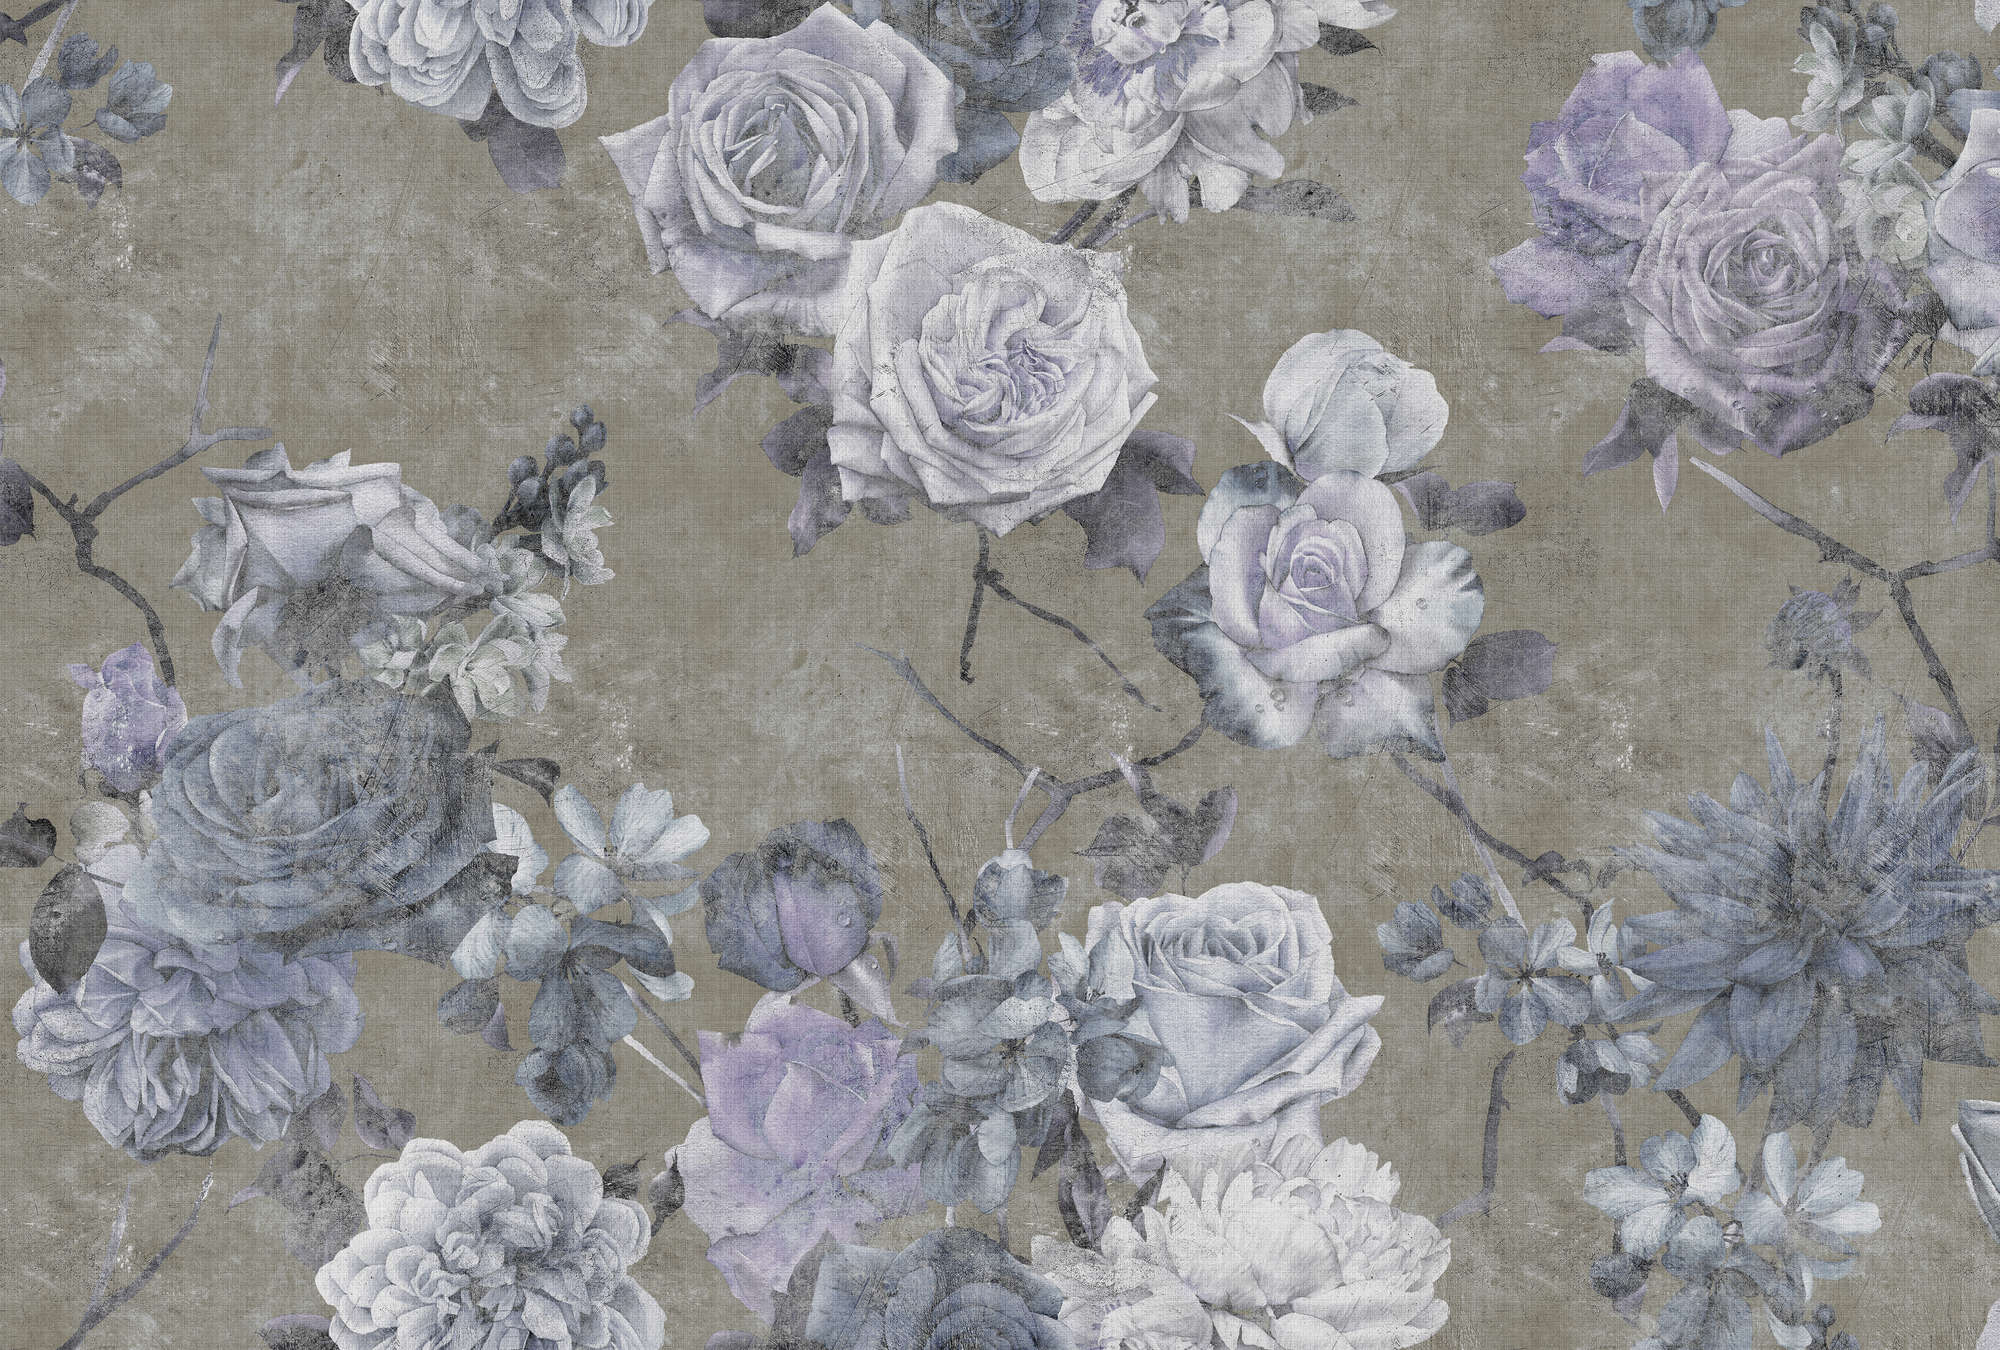             Bella Durmiente 1 - Papel pintado en estructura de lino natural flores de rosa en aspecto usado - Azul, Topo | Vellón liso Premium
        